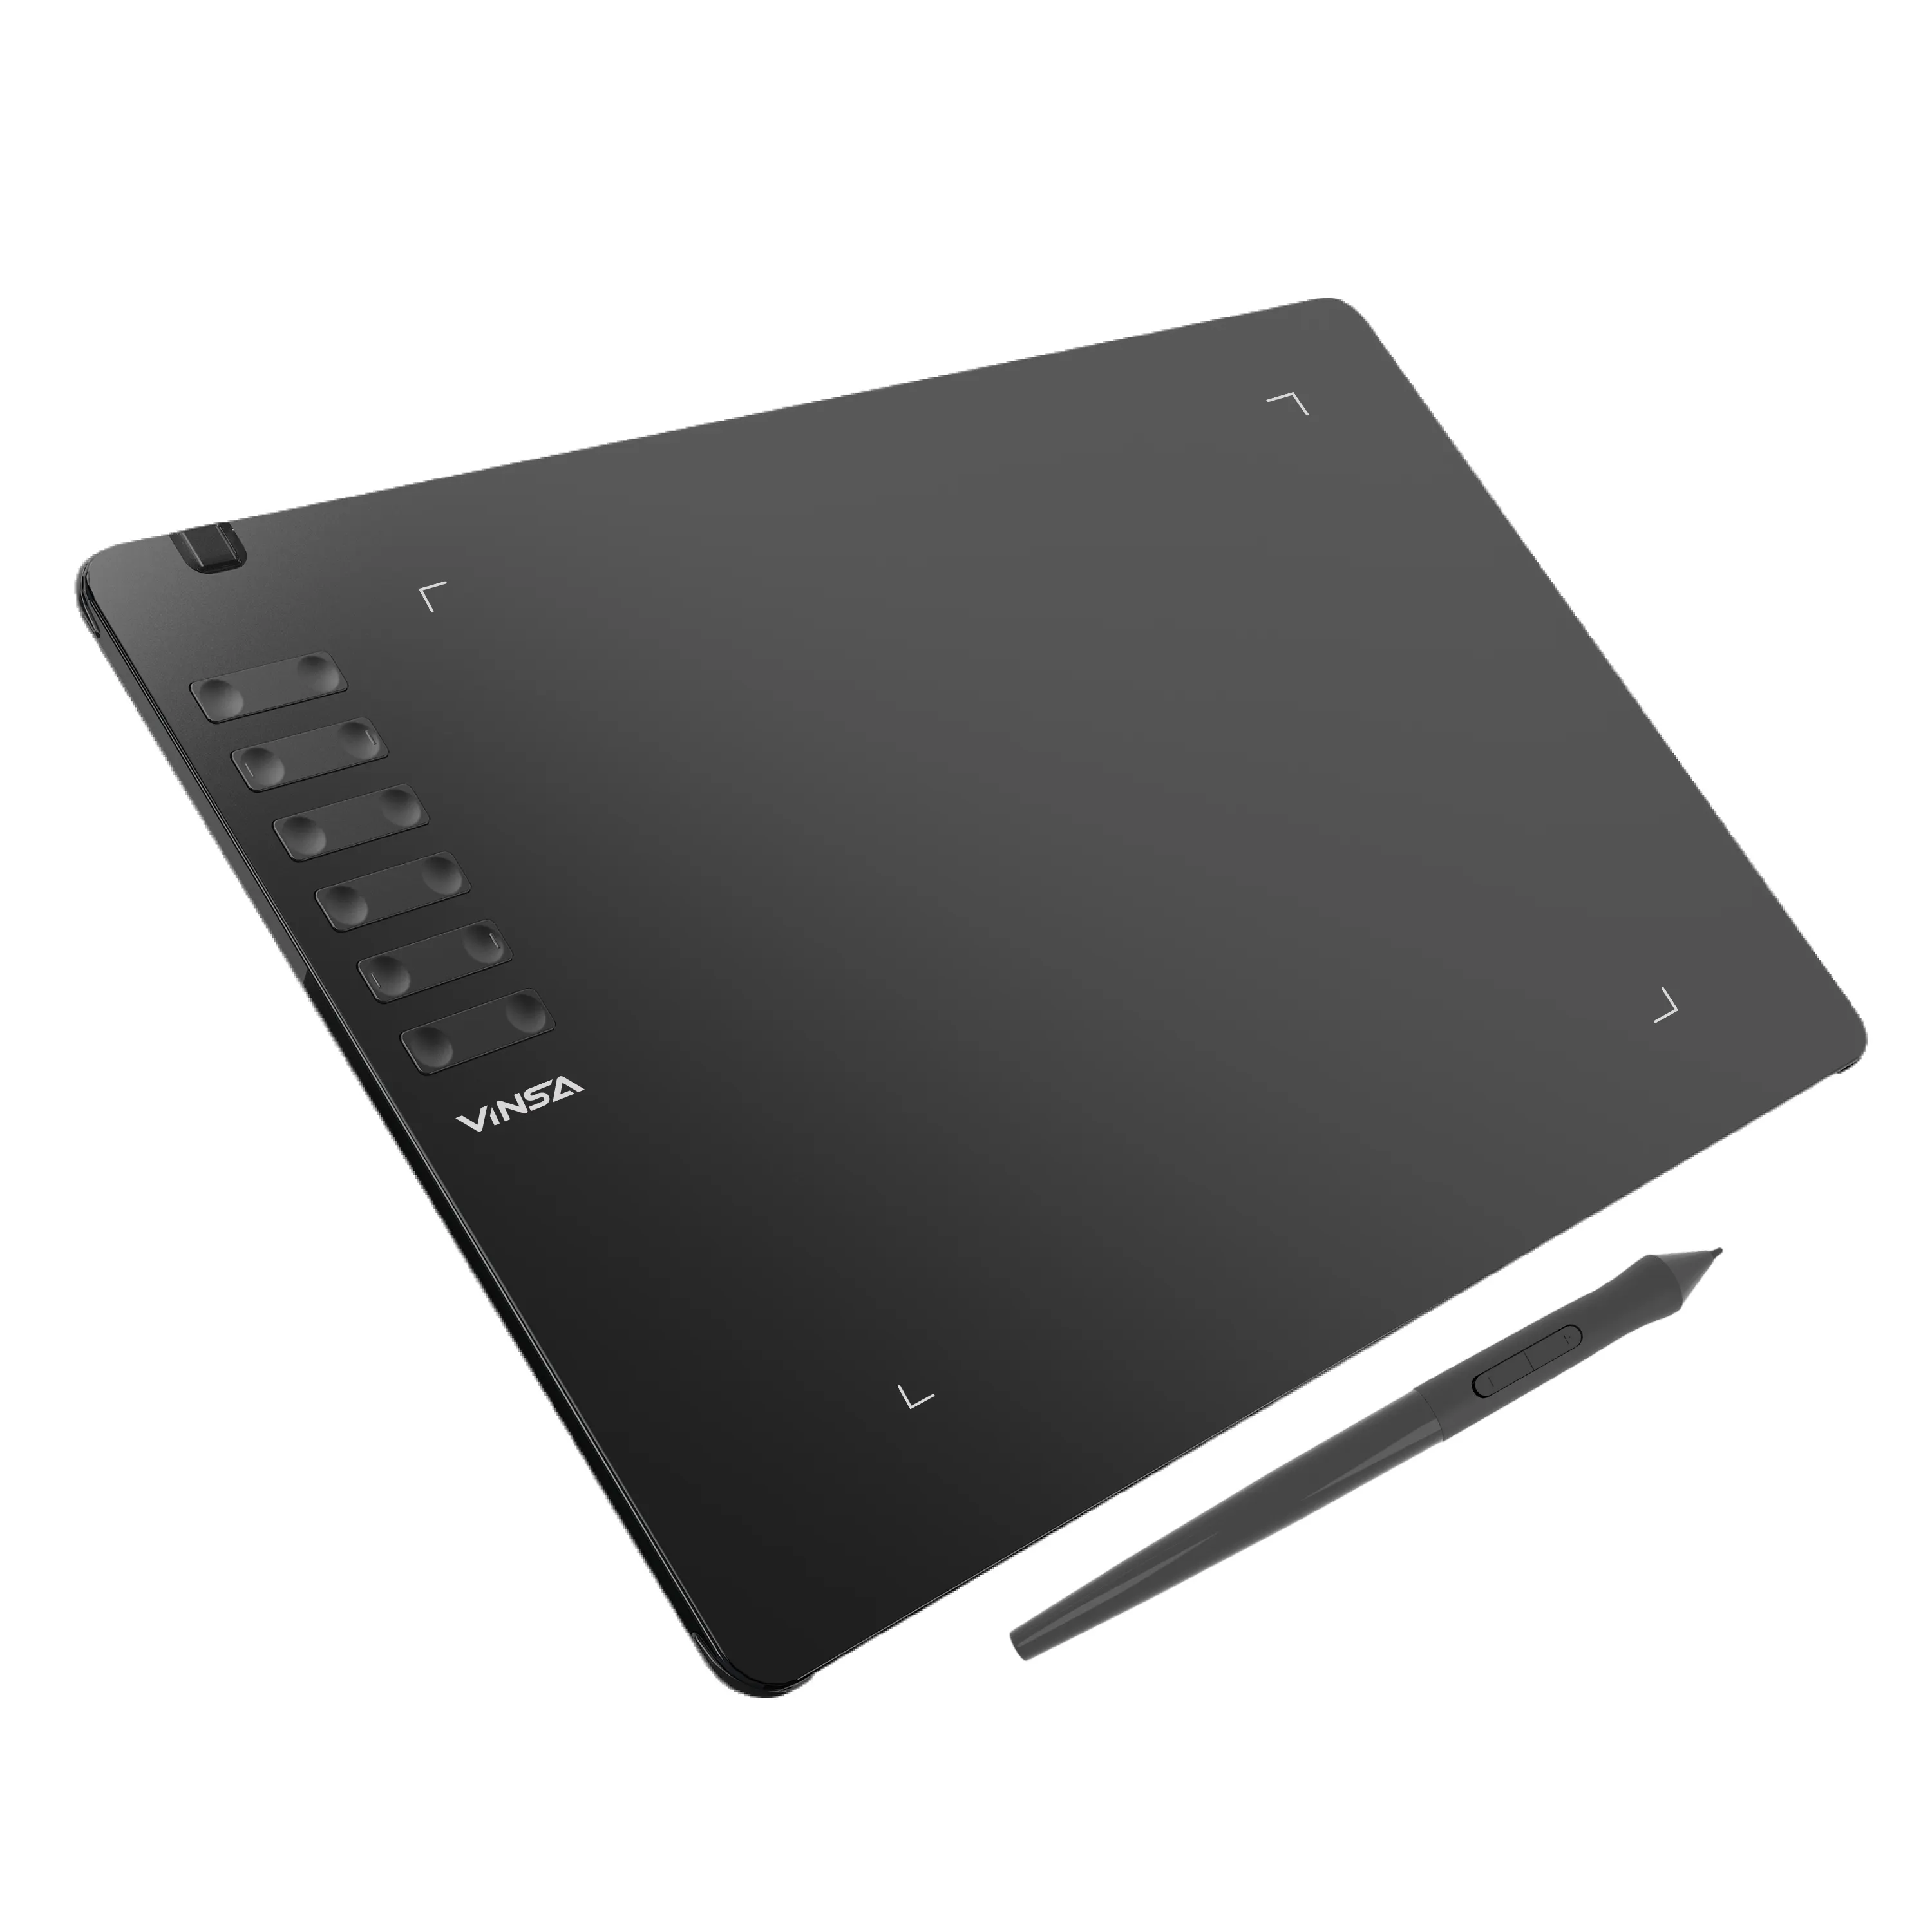 Nova chegada! VINSA T1161 Design Tablet Alta Resolução Passiva Emr Stylus Tablet Gráfico Desenho Pad Com Caneta Digital